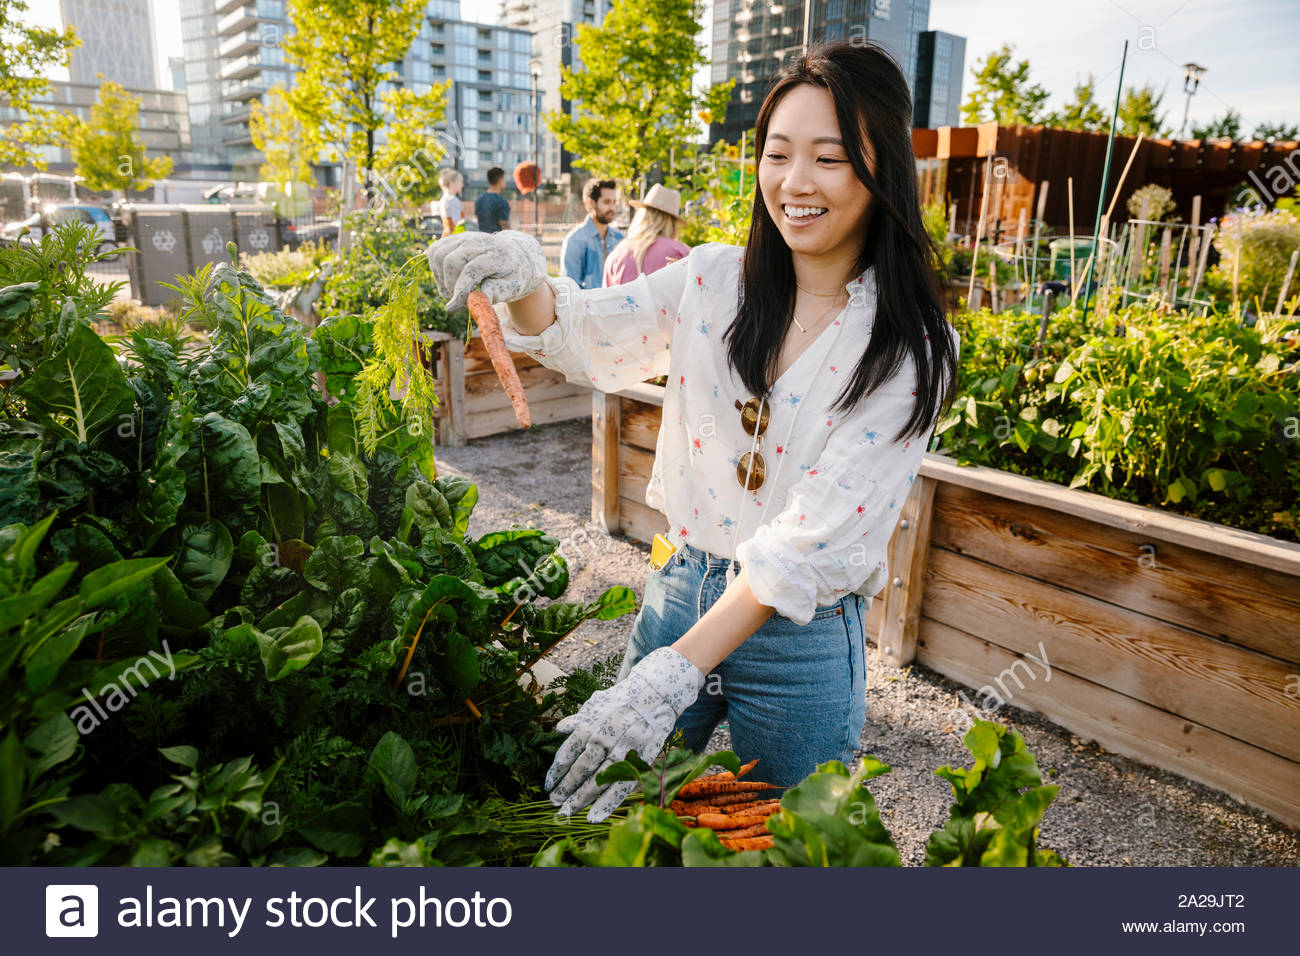 Happy young woman harvesting carottes fraîches dans le jardin de la communauté urbaine Banque D'Images